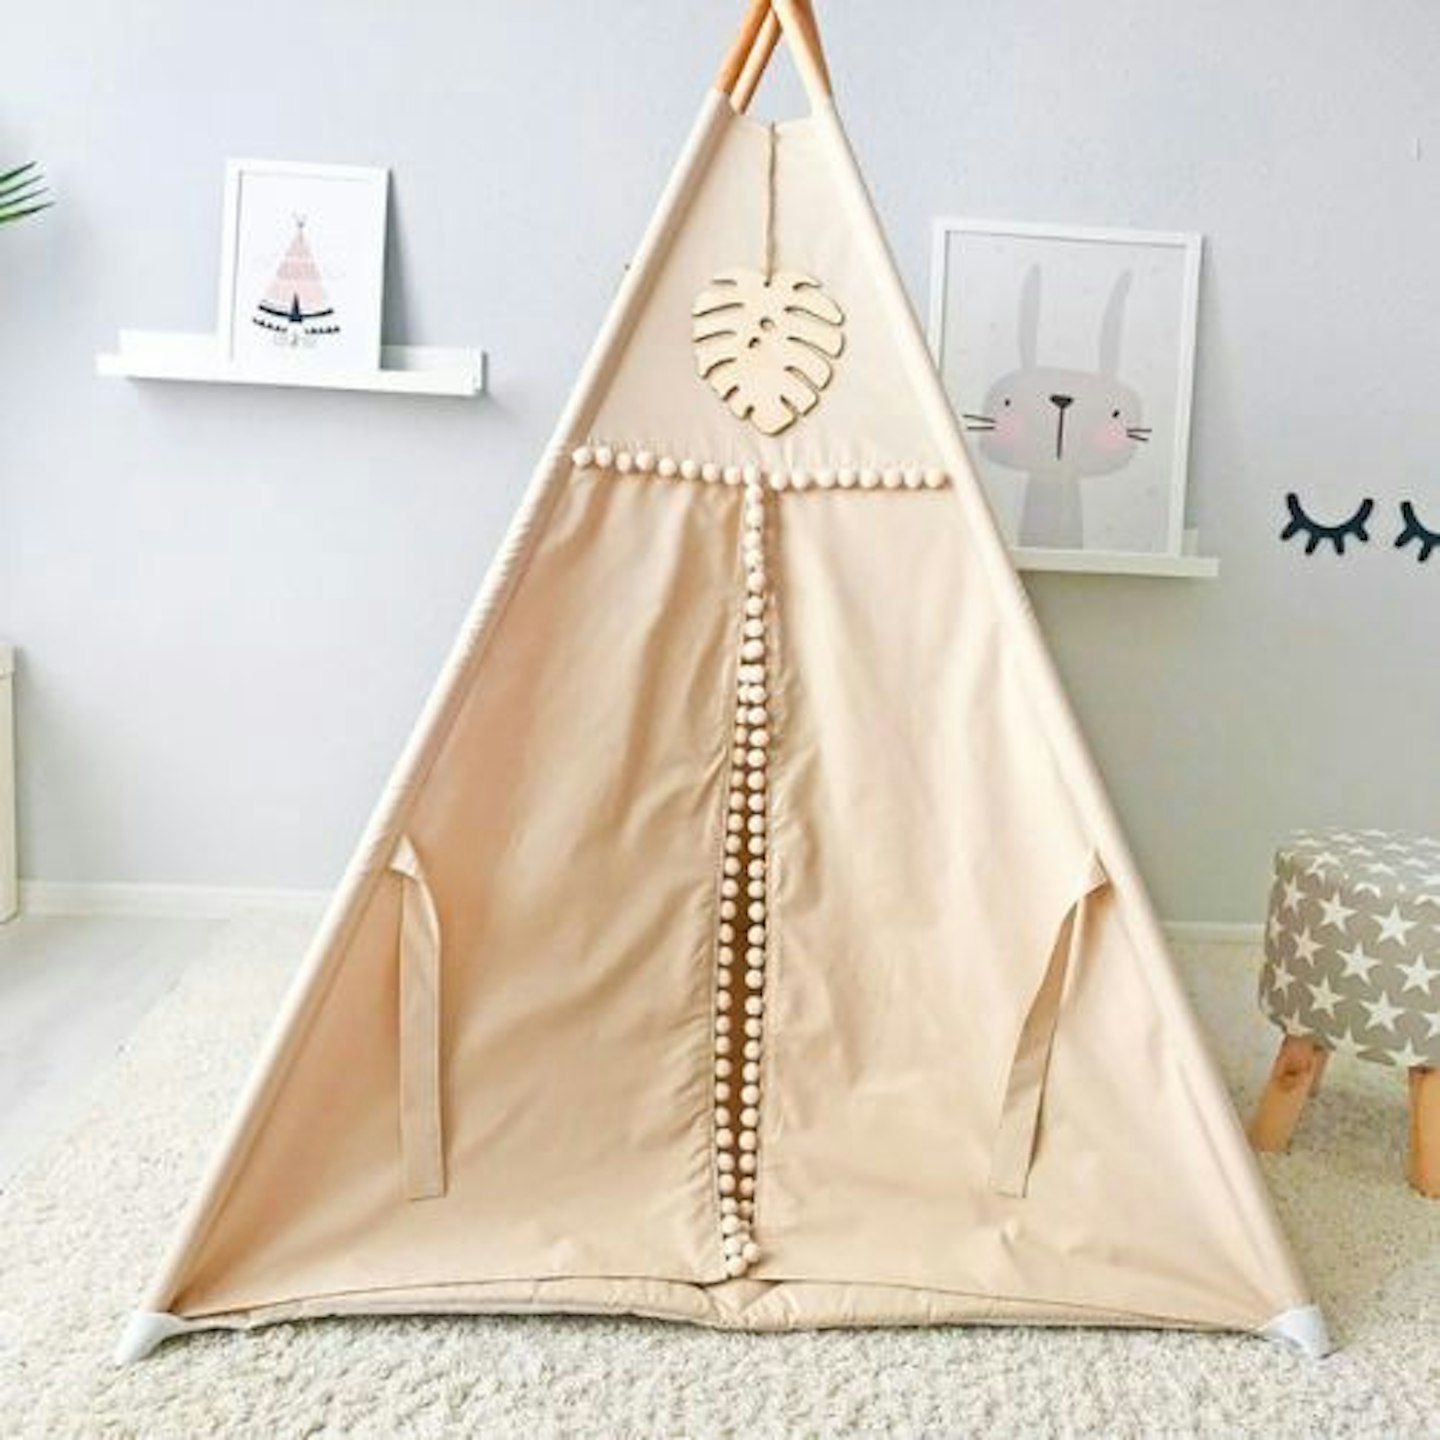 Vanilla Queen Triangular Play Tent